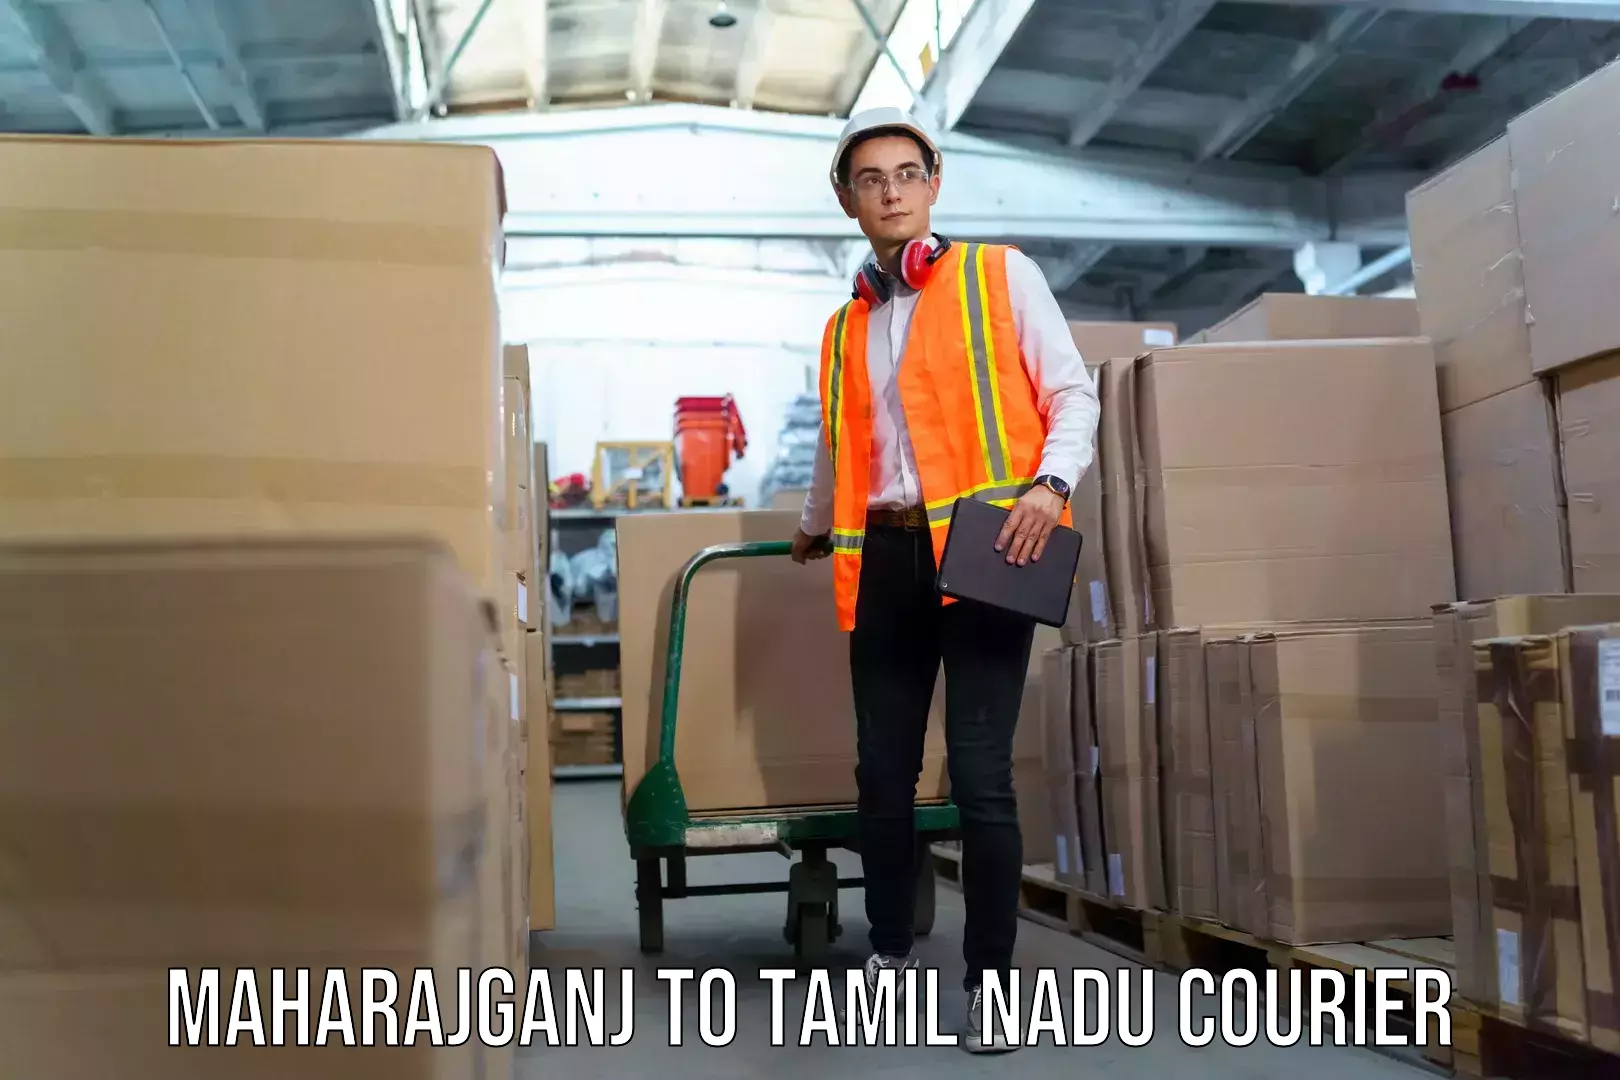 Baggage shipping service Maharajganj to Tamil Nadu